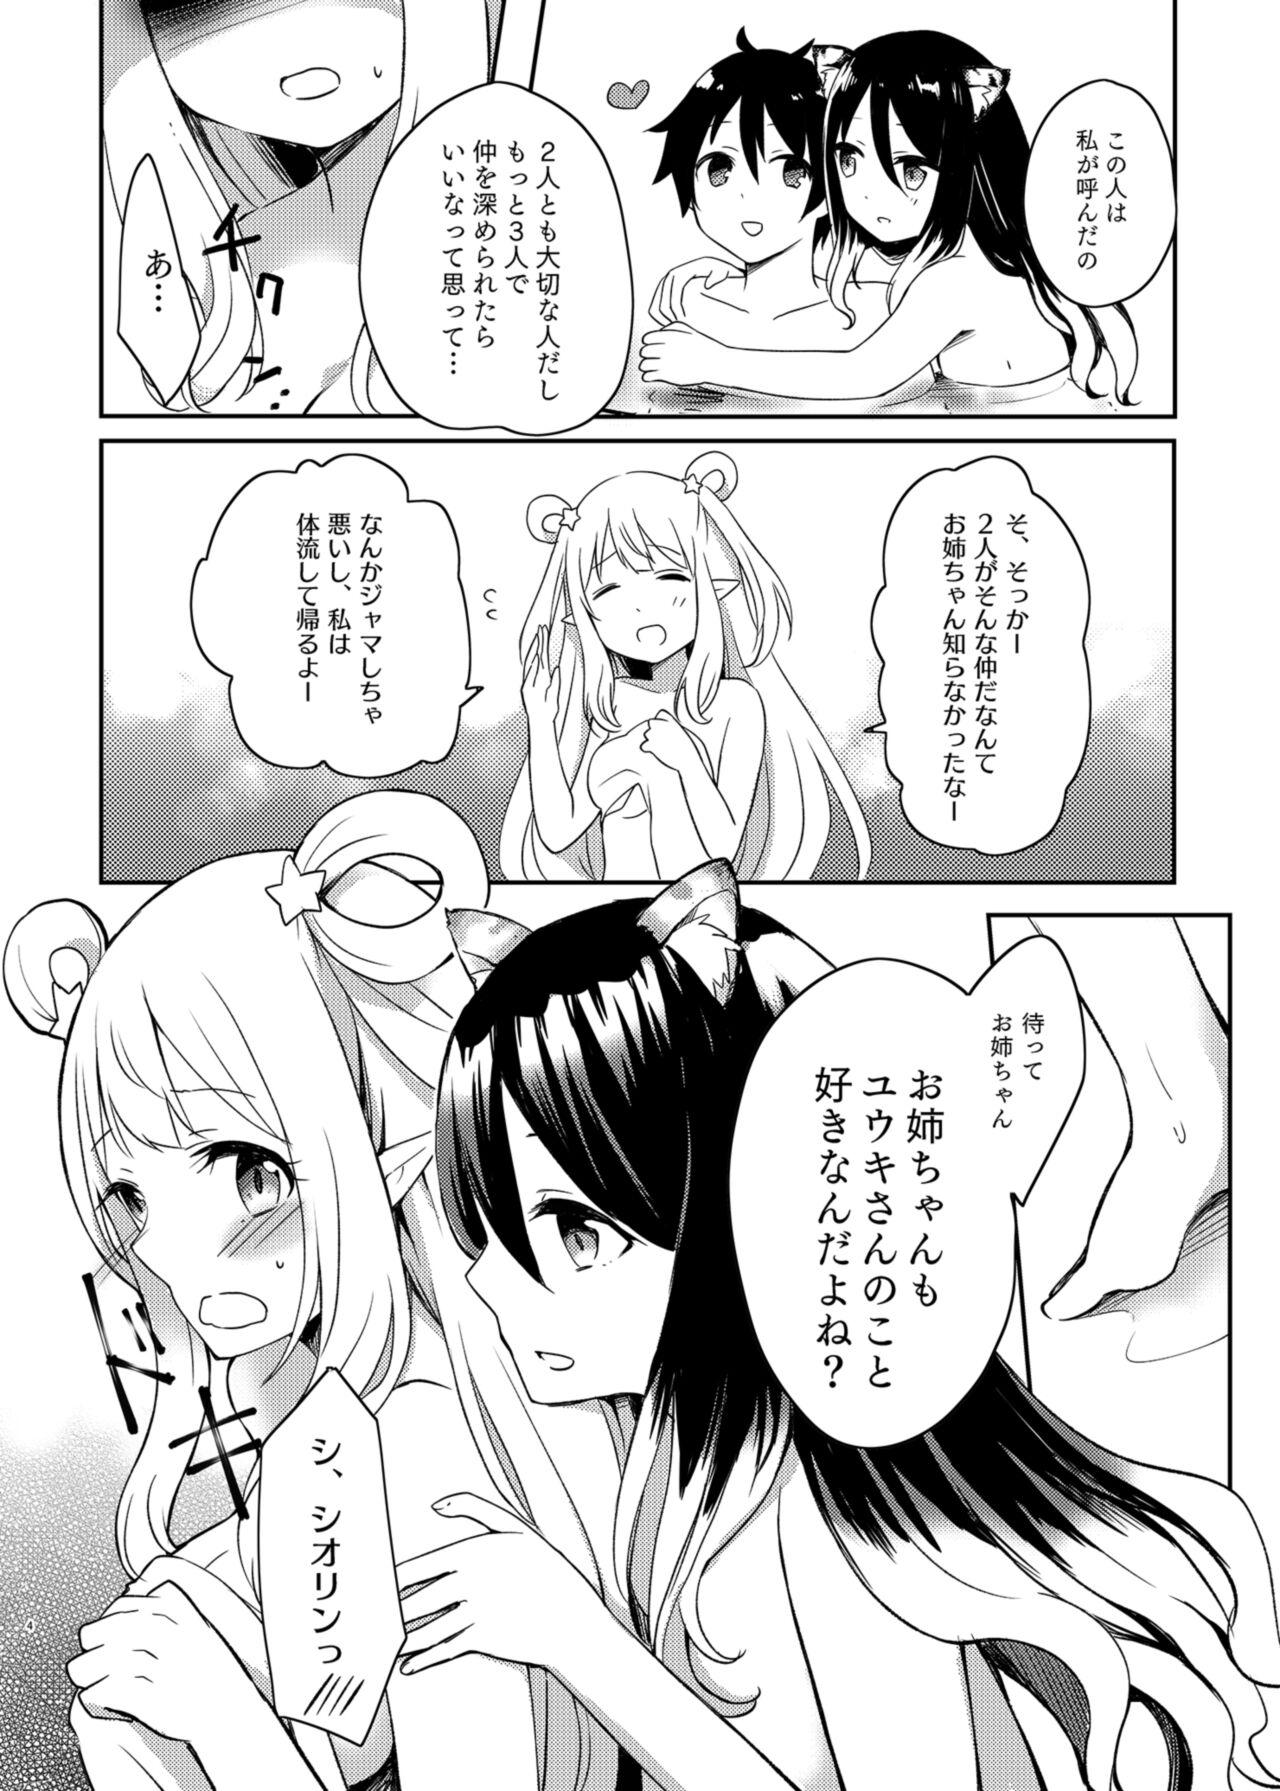 Fitness Hatsune to Shiori no Yukemuri Daisakusen - Princess connect Fingering - Page 4